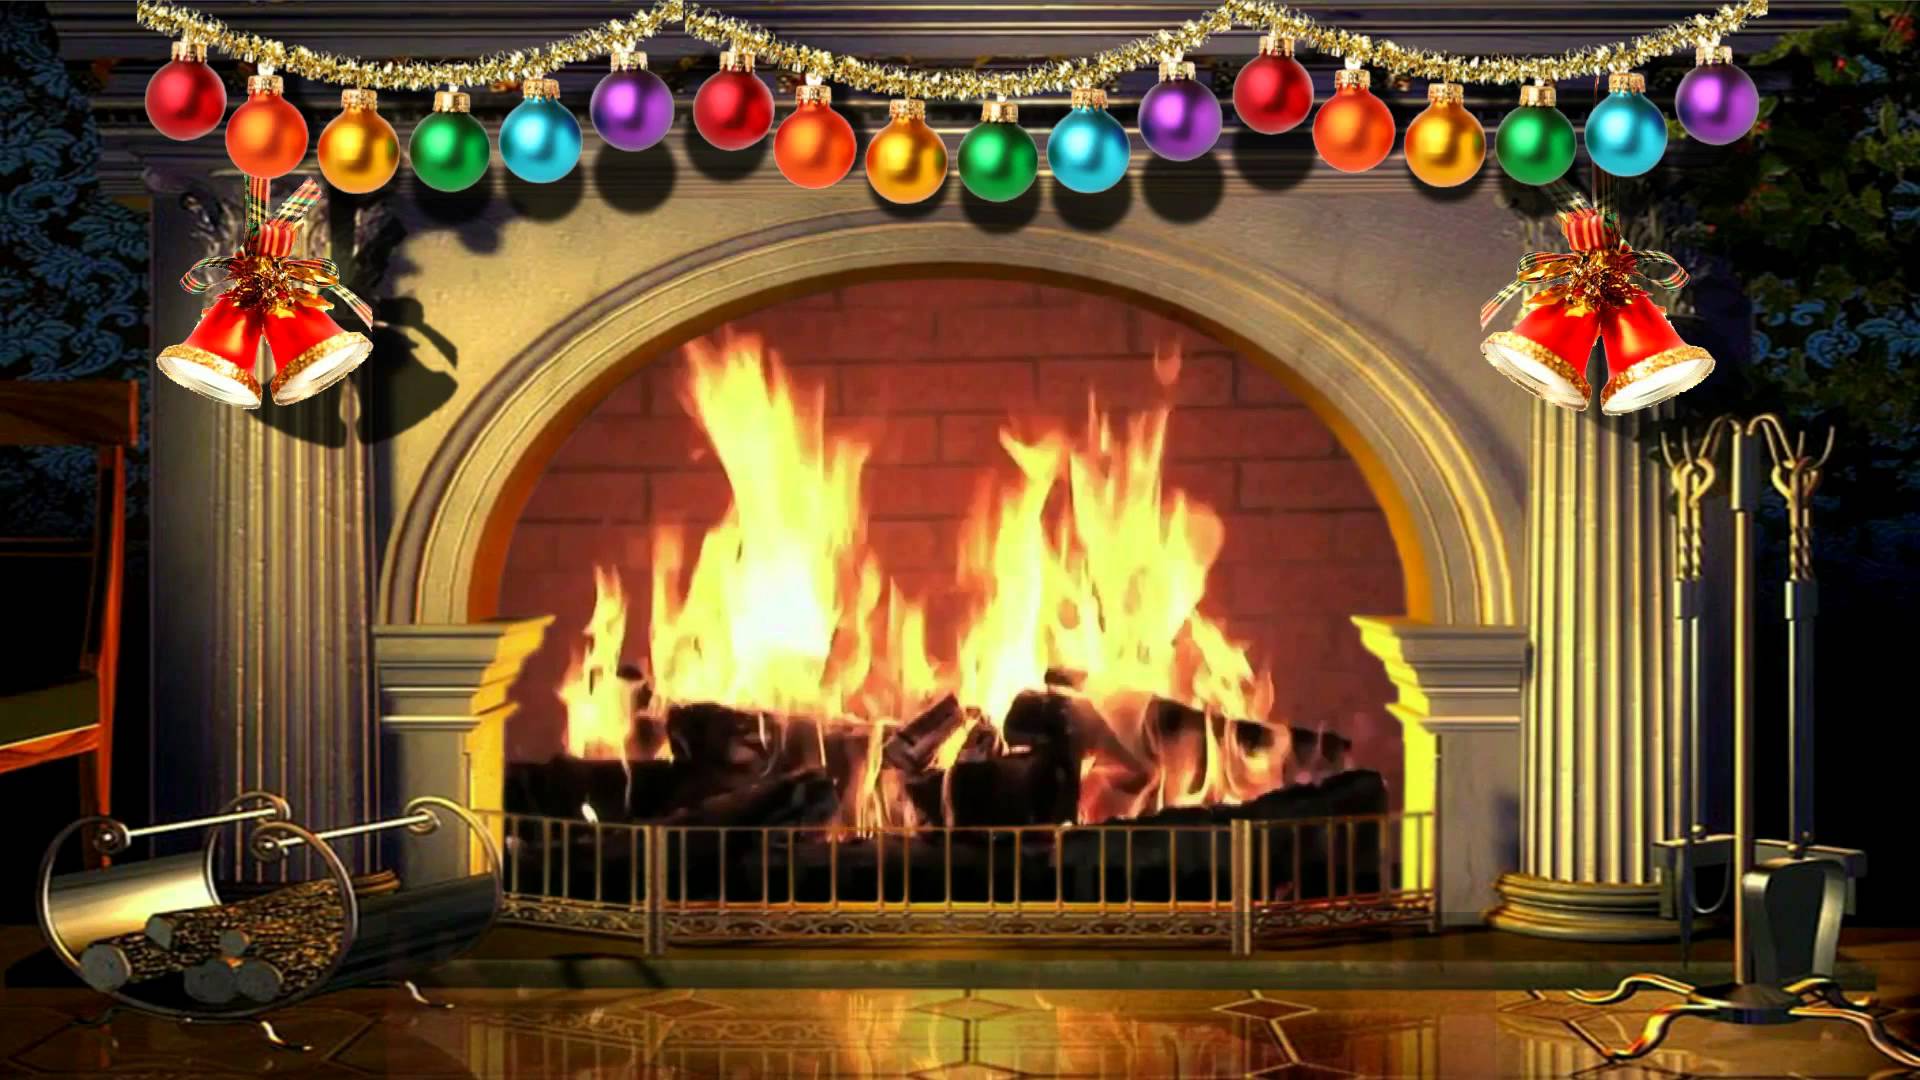 Chỉ cần một cú nhấn chuột và bạn sẽ được đưa vào một thế giới ảo đầy màu sắc của lửa lò giả Noel miễn phí. Trải nghiệm những hình ảnh tuyệt đẹp của những ngọn lửa lung linh, đầy sáng tạo và không ngừng trỗi dậy, giúp bạn hoàn toàn thư giãn và khám phá thế giới kỳ thú của Giáng Sinh.